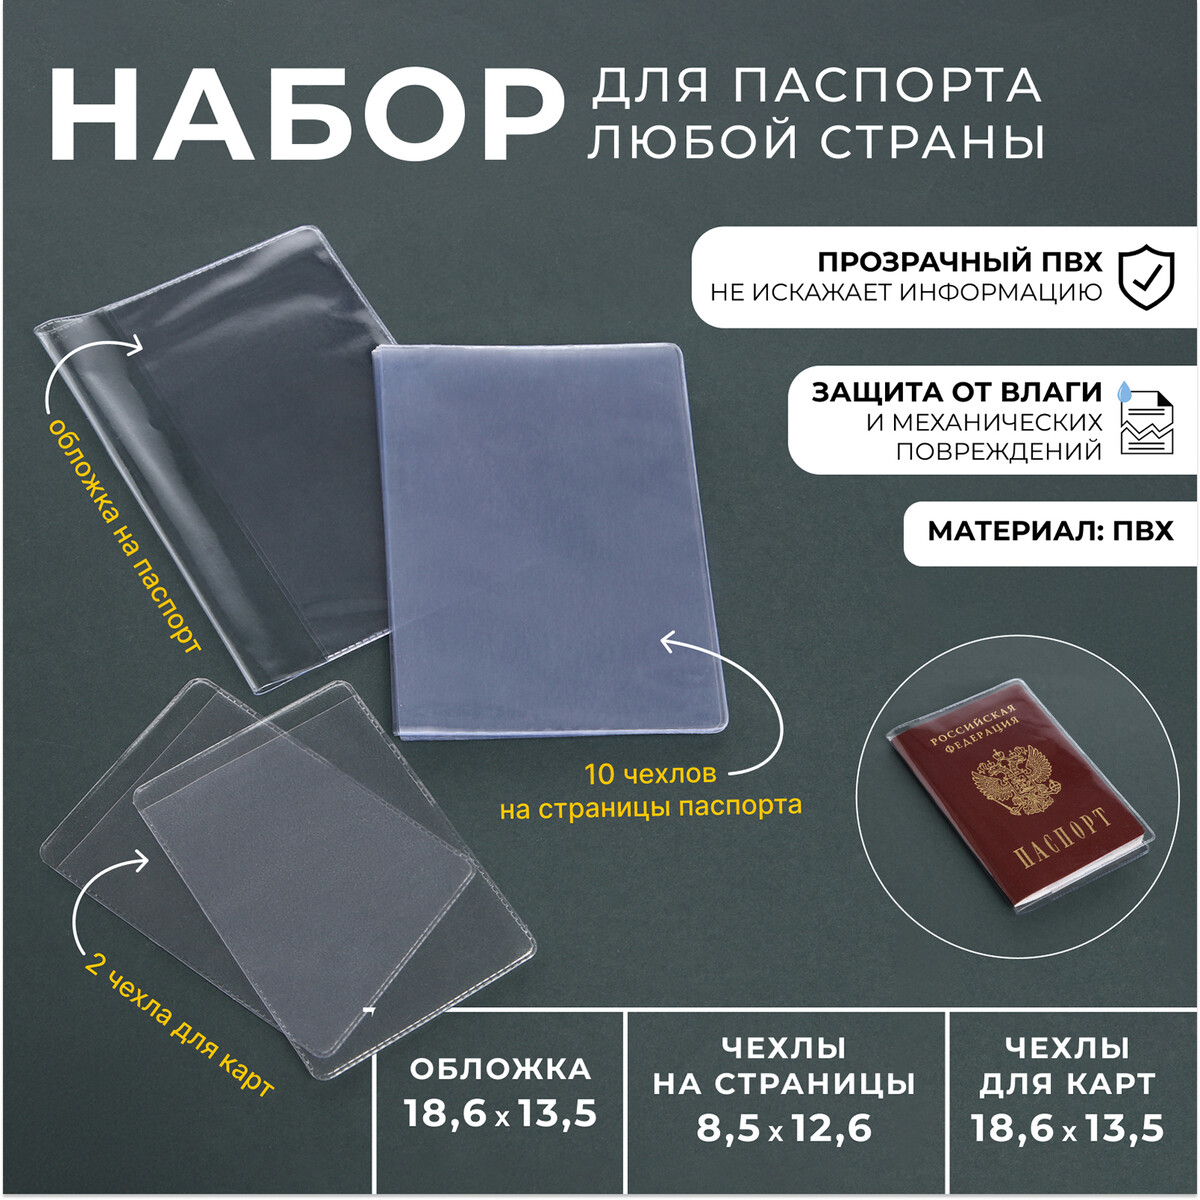 Набор для паспорта: обложка на паспорт; 10 чехлов на страницы паспорта, 2 чехла для карт, цвет прозрачный